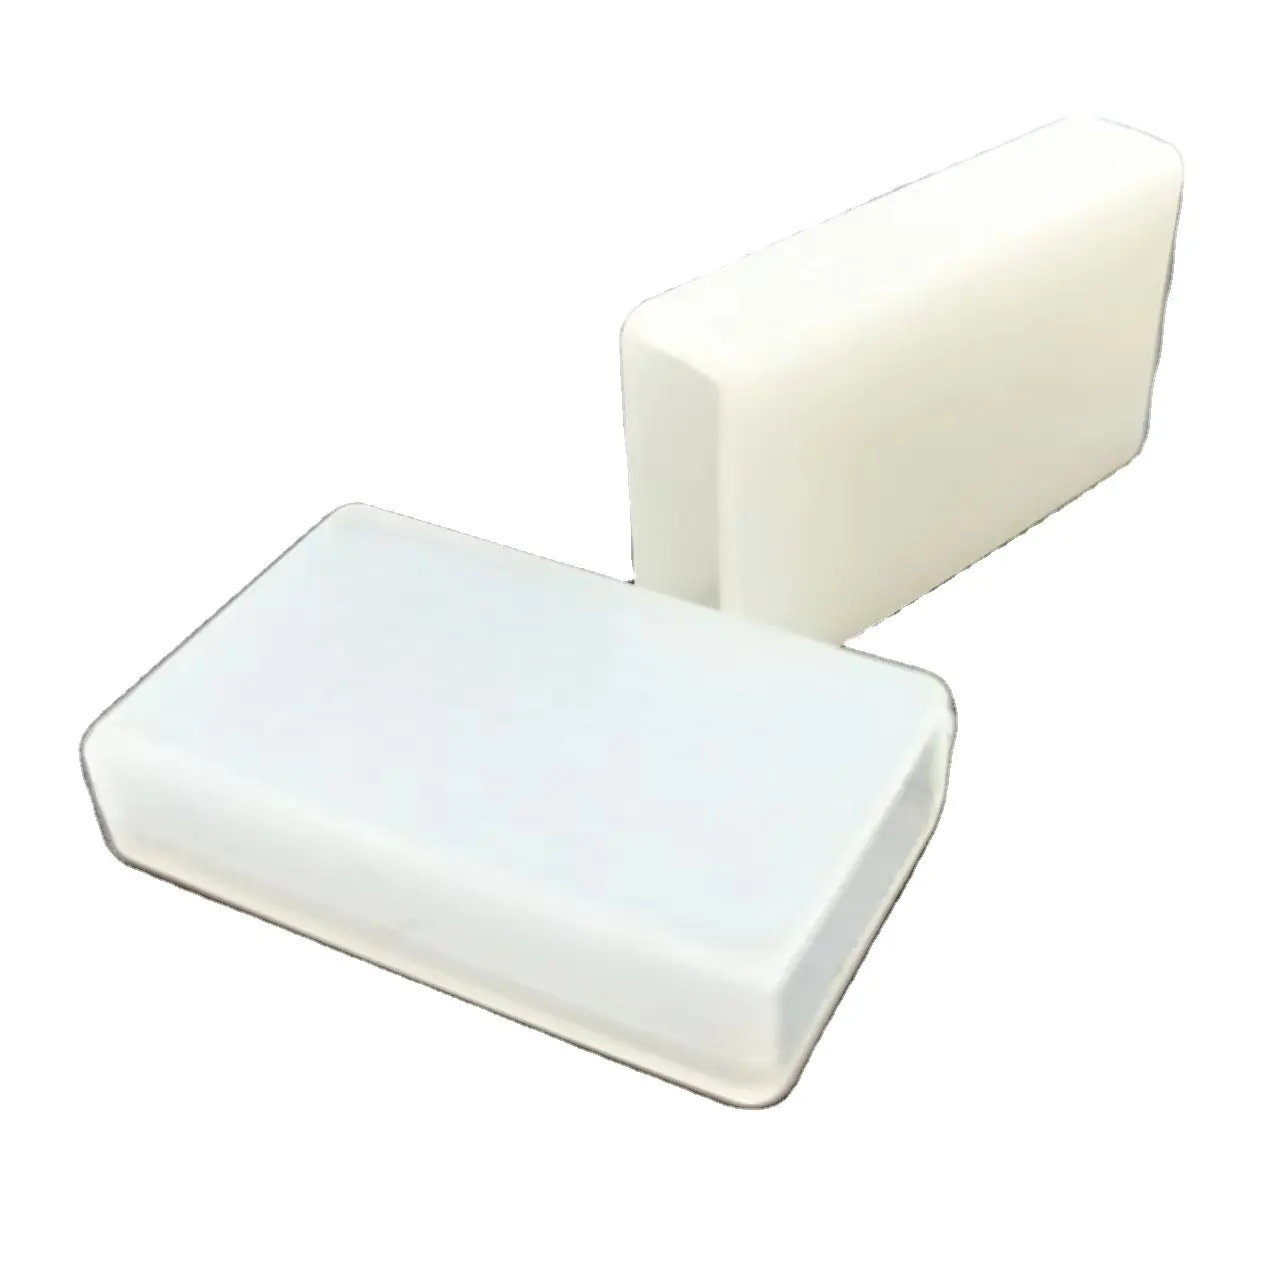 Chaqueta blanca de silicona a prueba de polvo, cubierta protectora de goma